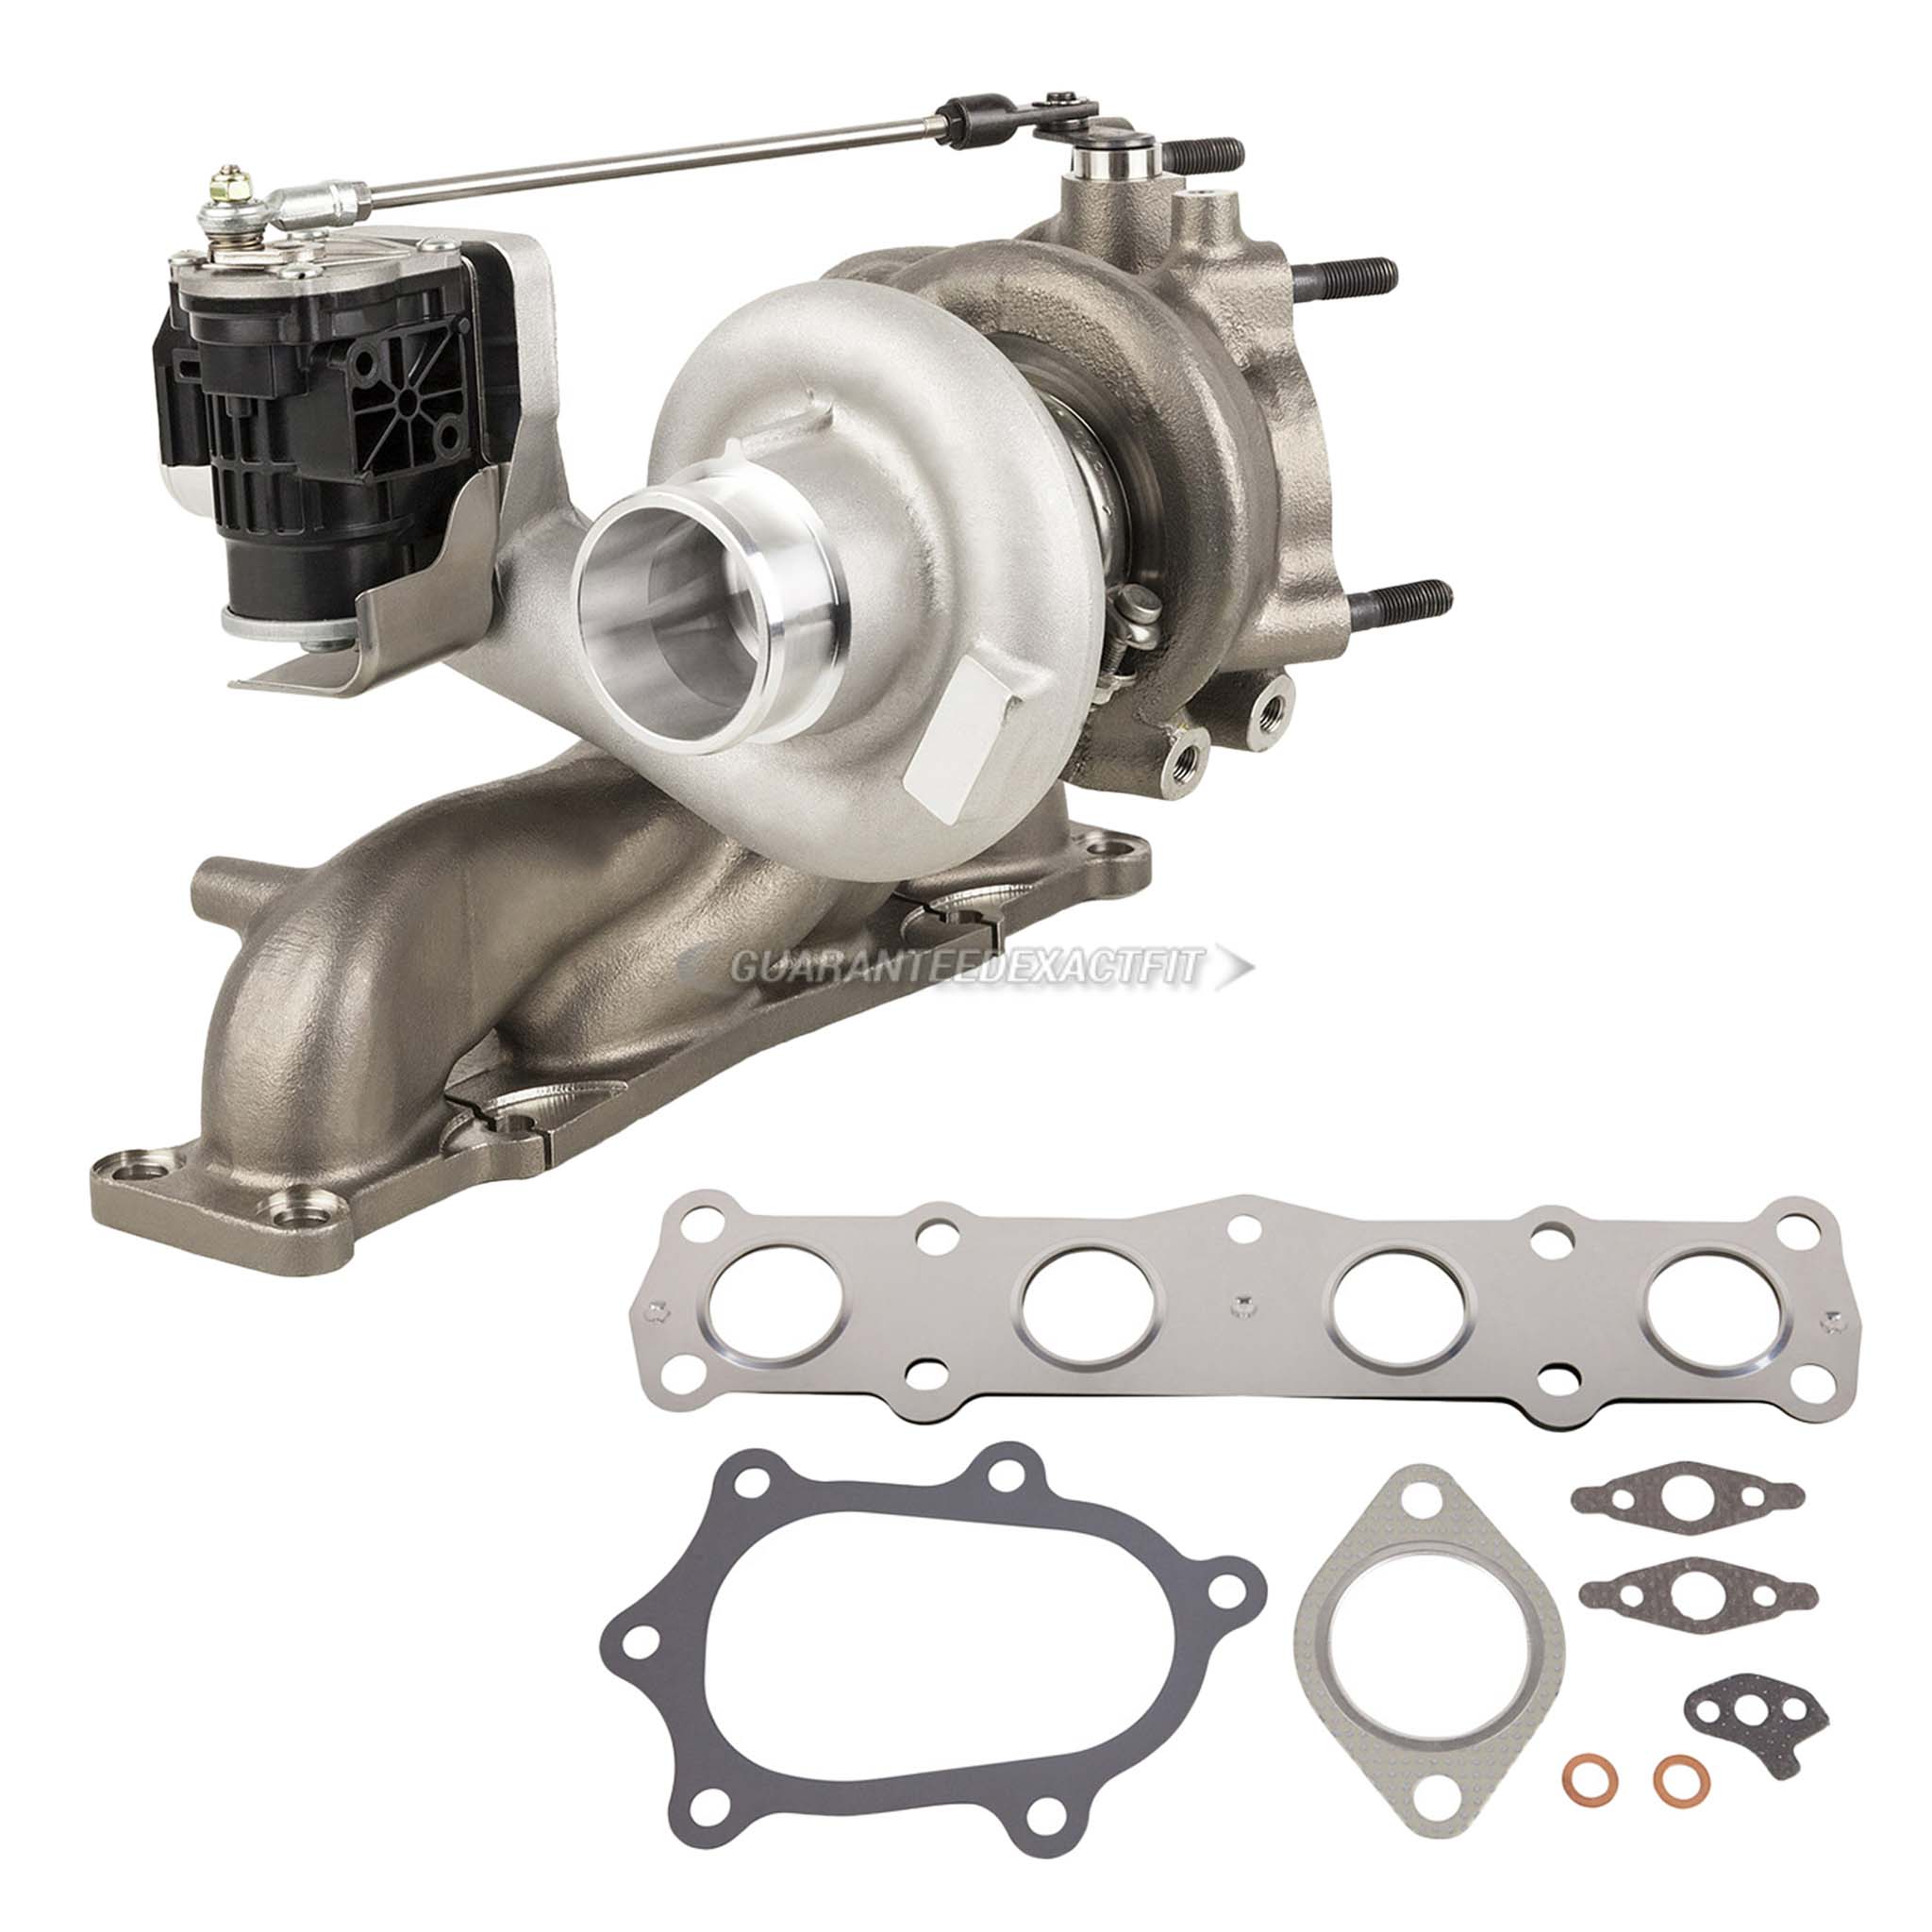 2016 Hyundai Santa Fe Sport turbocharger and installation accessory kit 